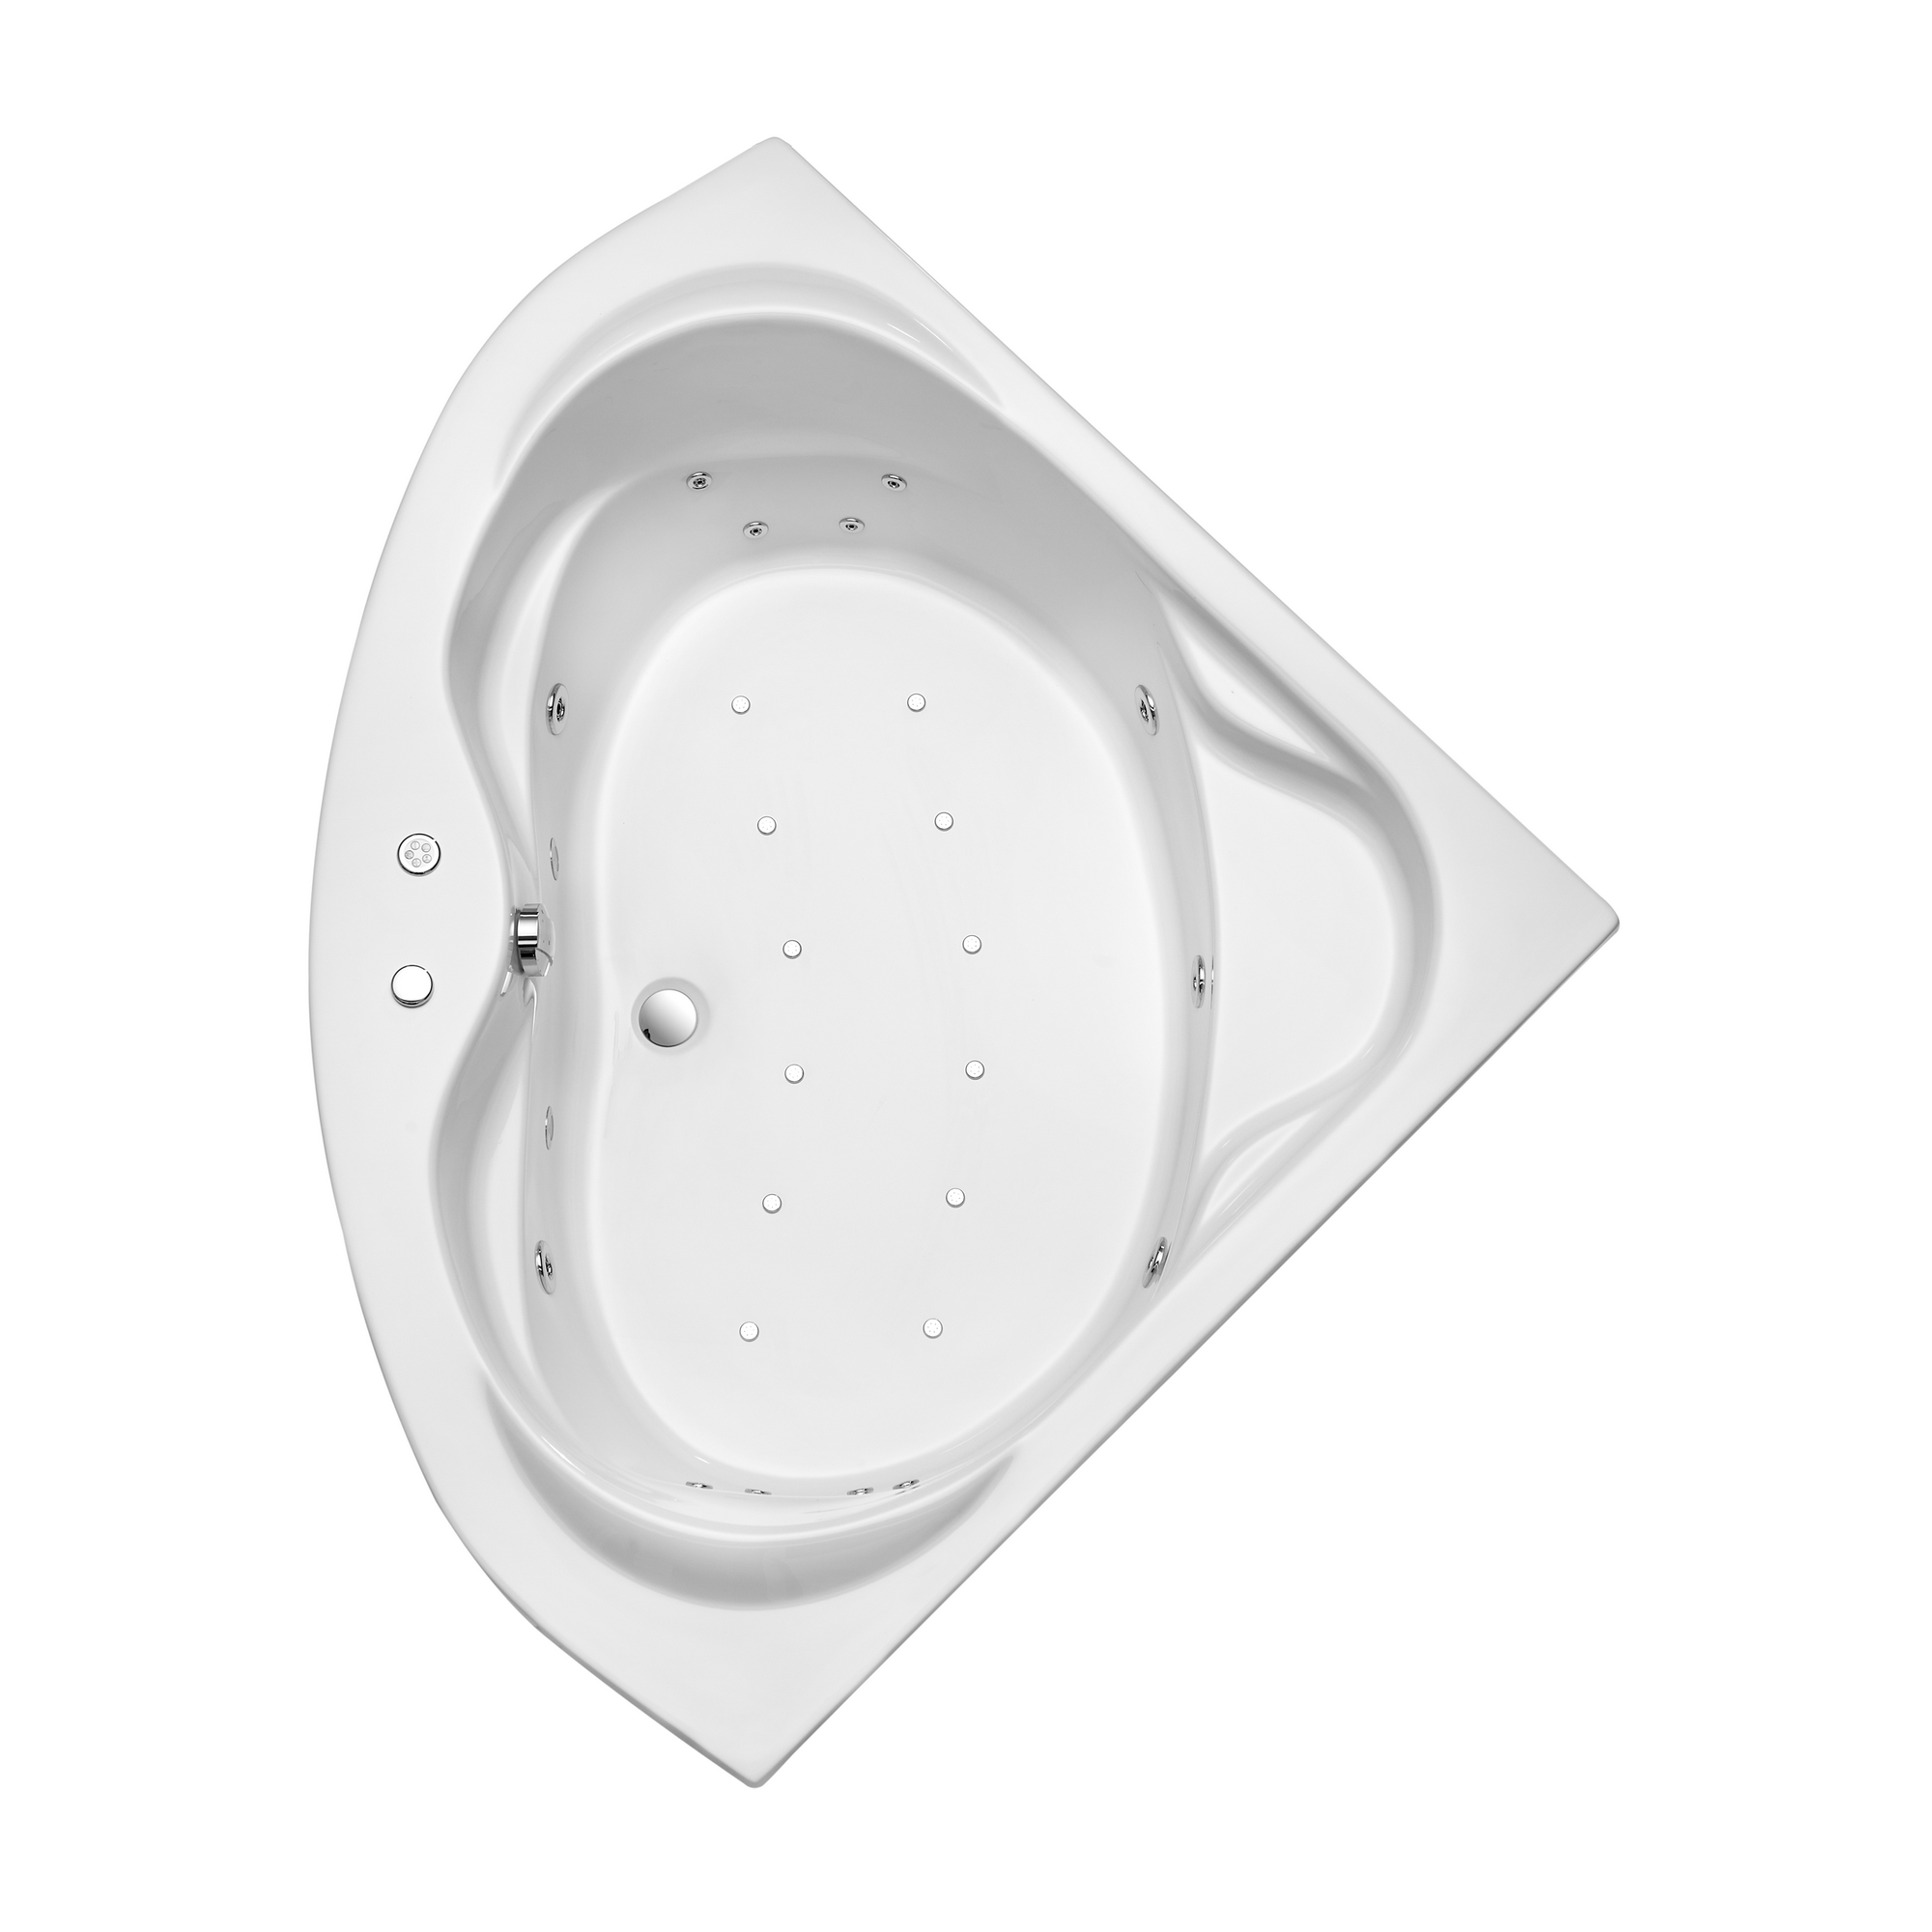 Whirlpool-Komplettset 'Madras' Sanitäracryl weiß 145 x 145 x 42 cm + product picture